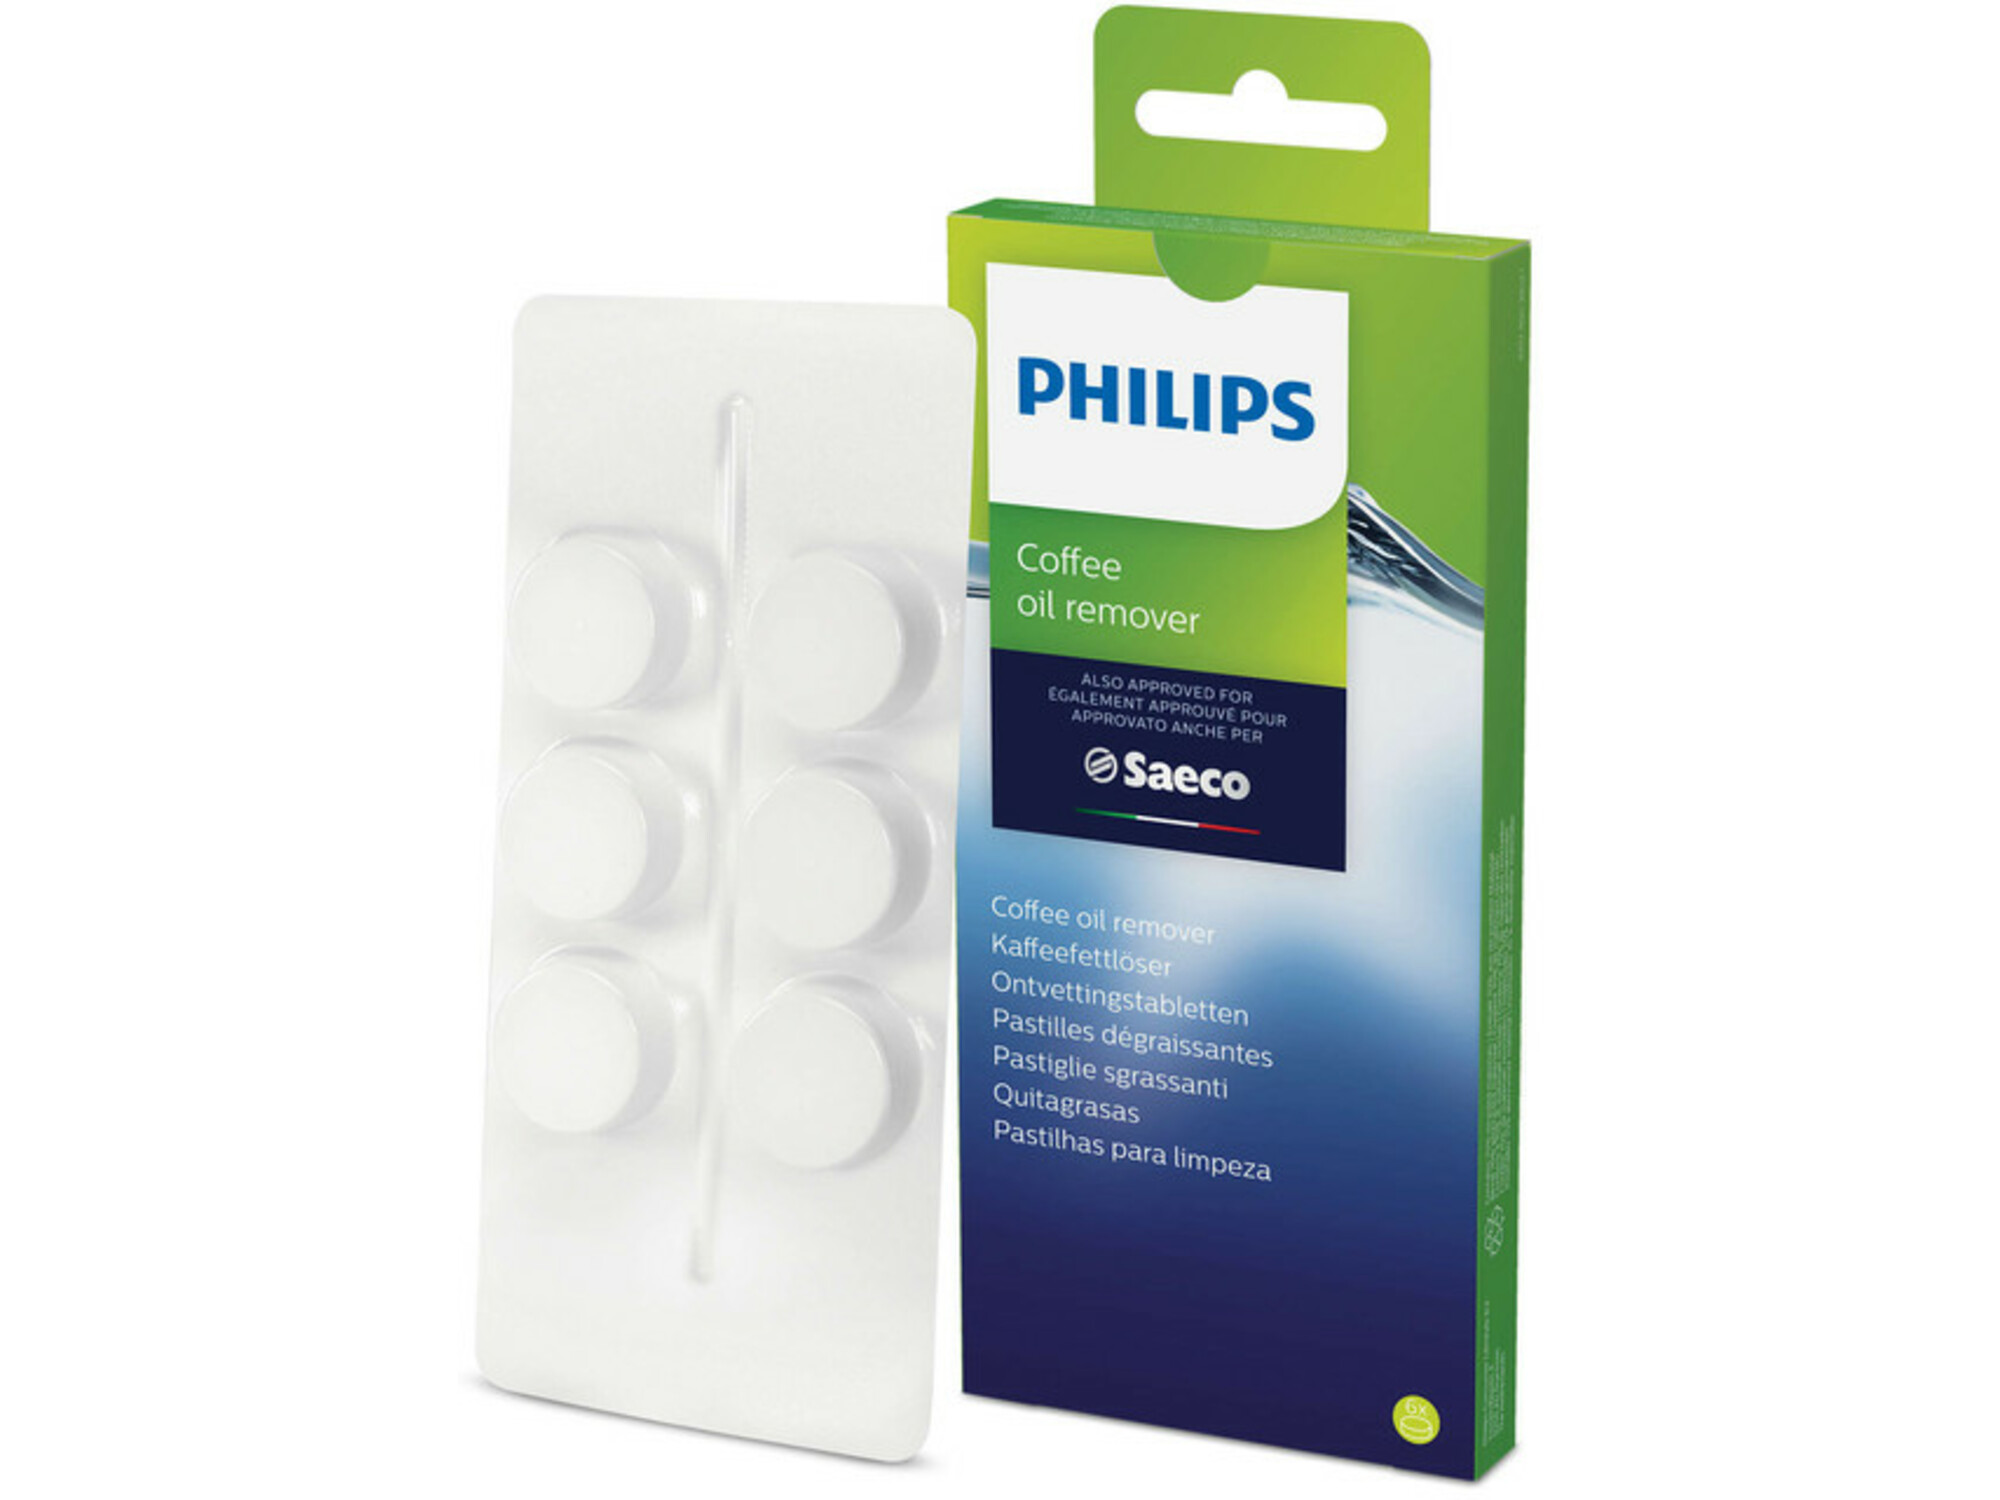 Philips tablete za uklanjanje ulja od kafe za espreso aparat CA6704/10